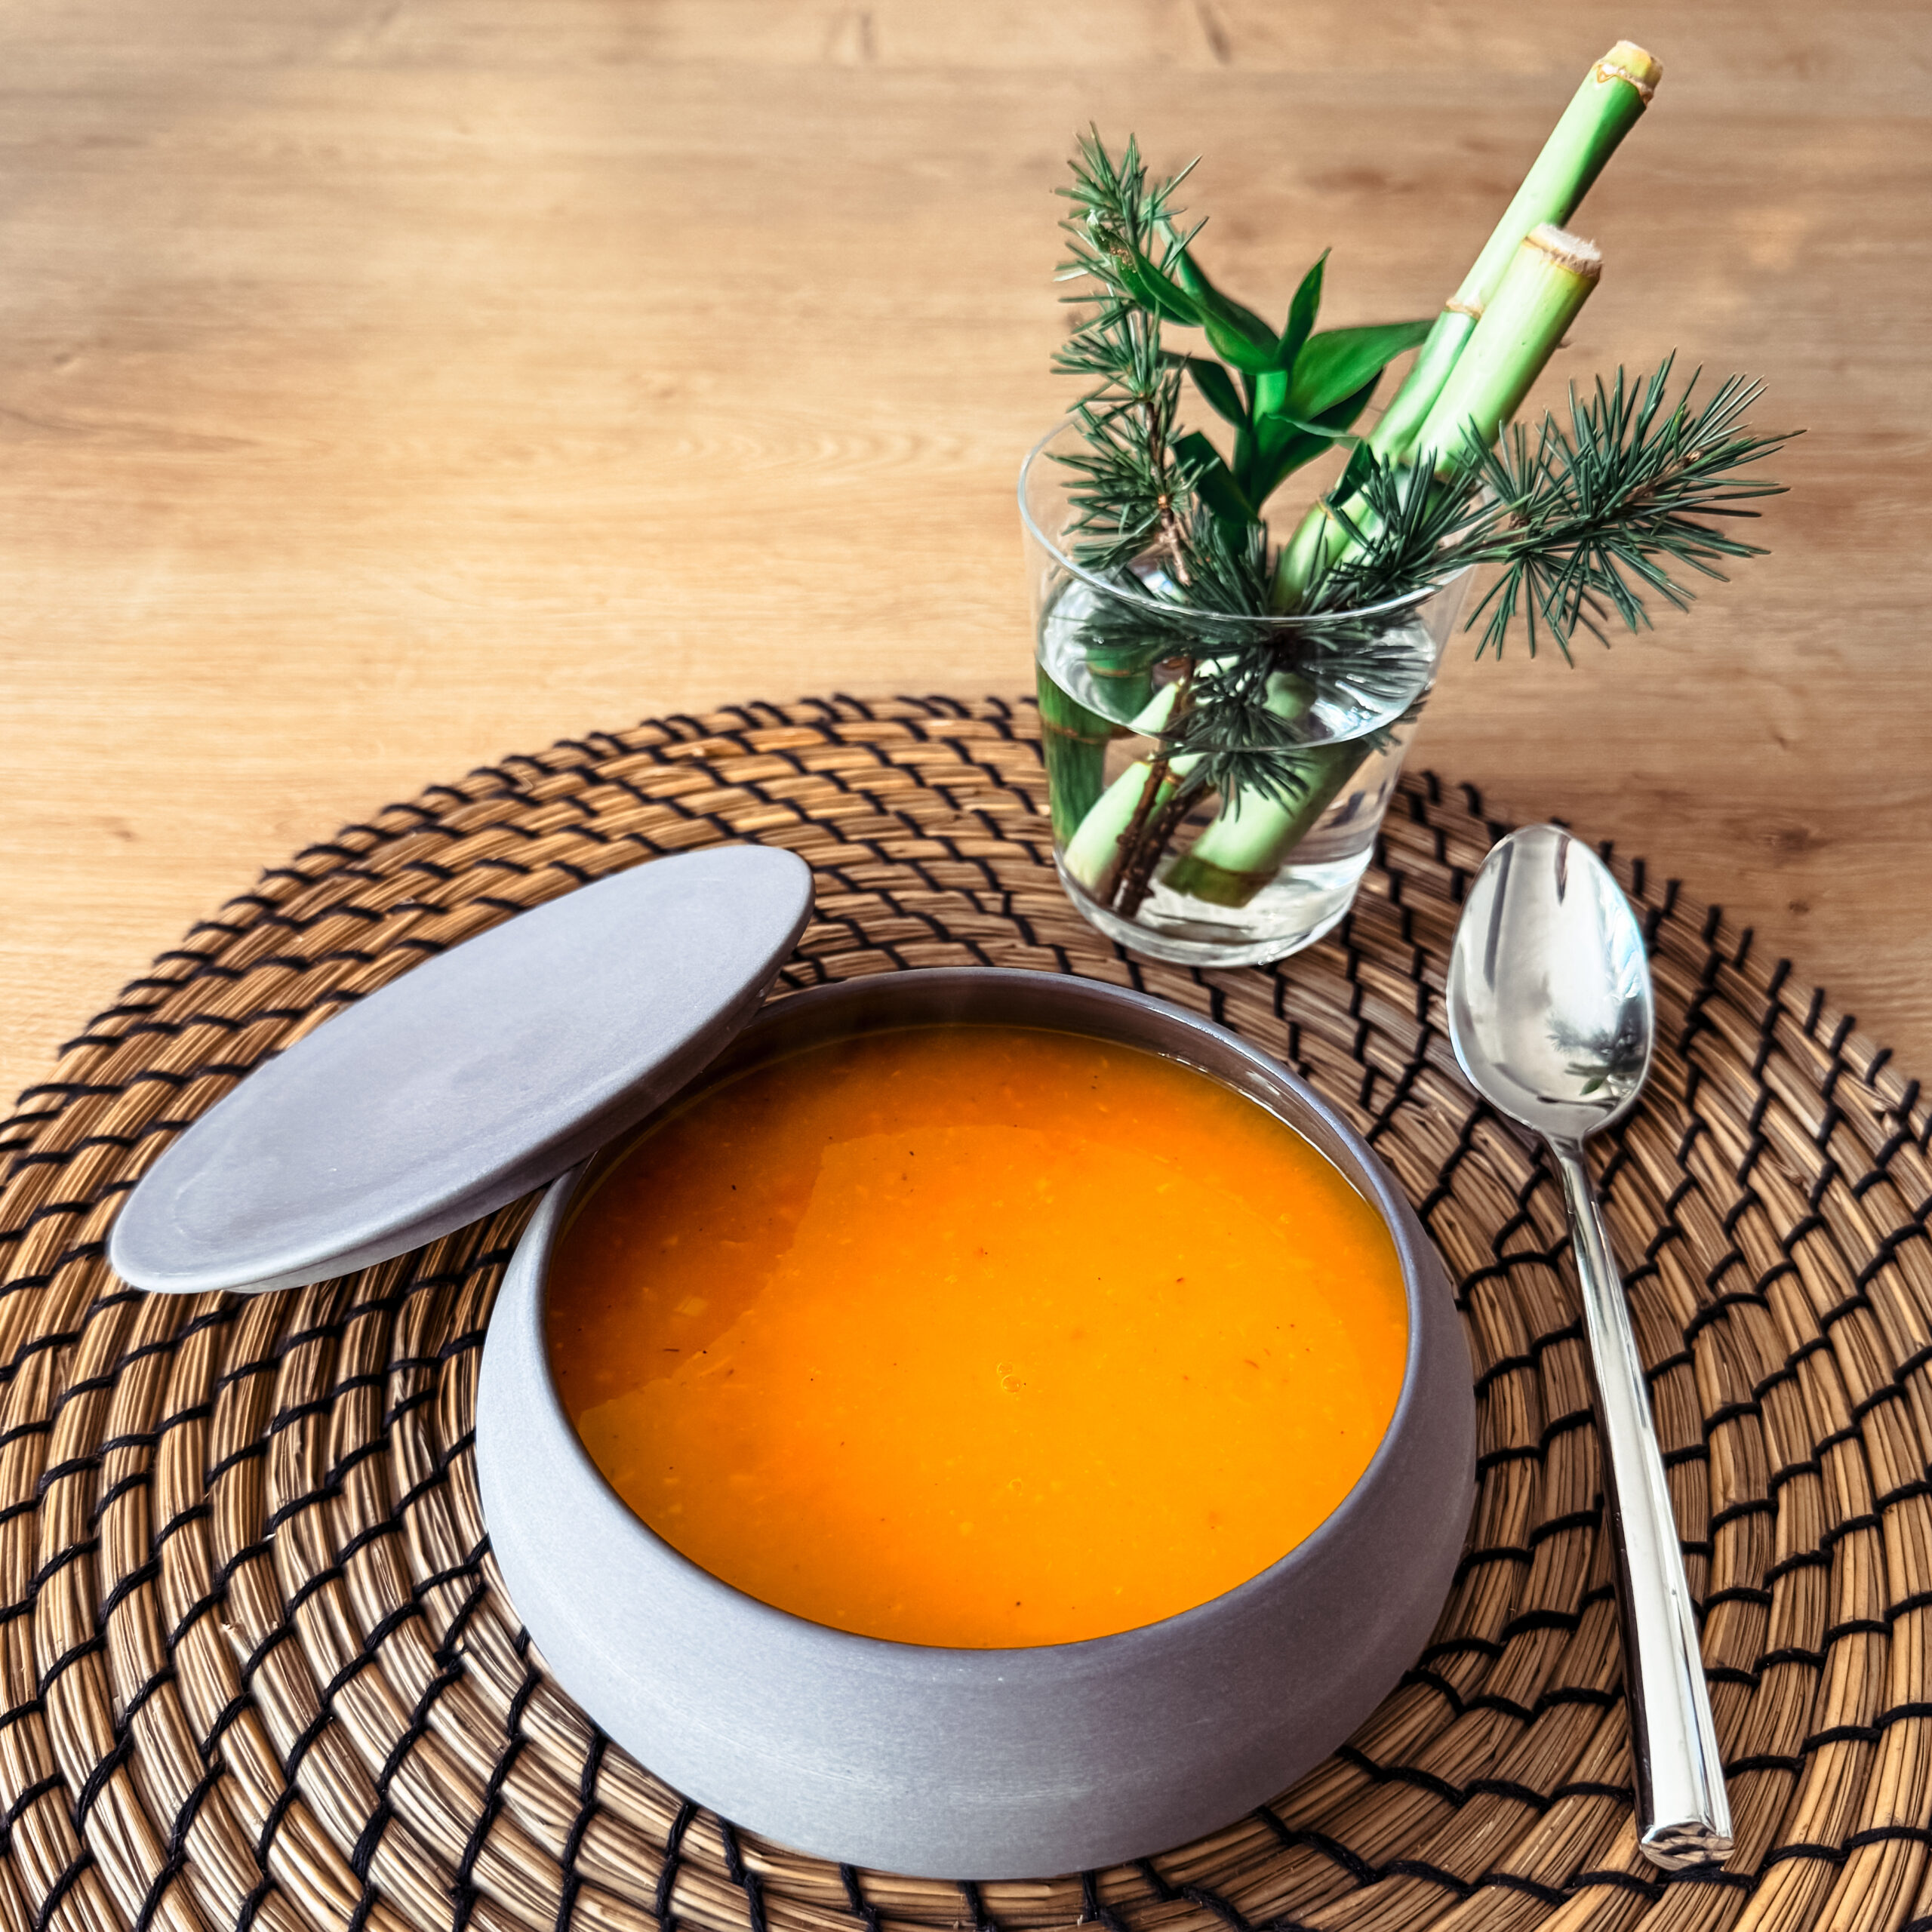 IMG 7969 scaled - La soupe d'hiver, aux épices qui réchauffent le corps et l'esprit.